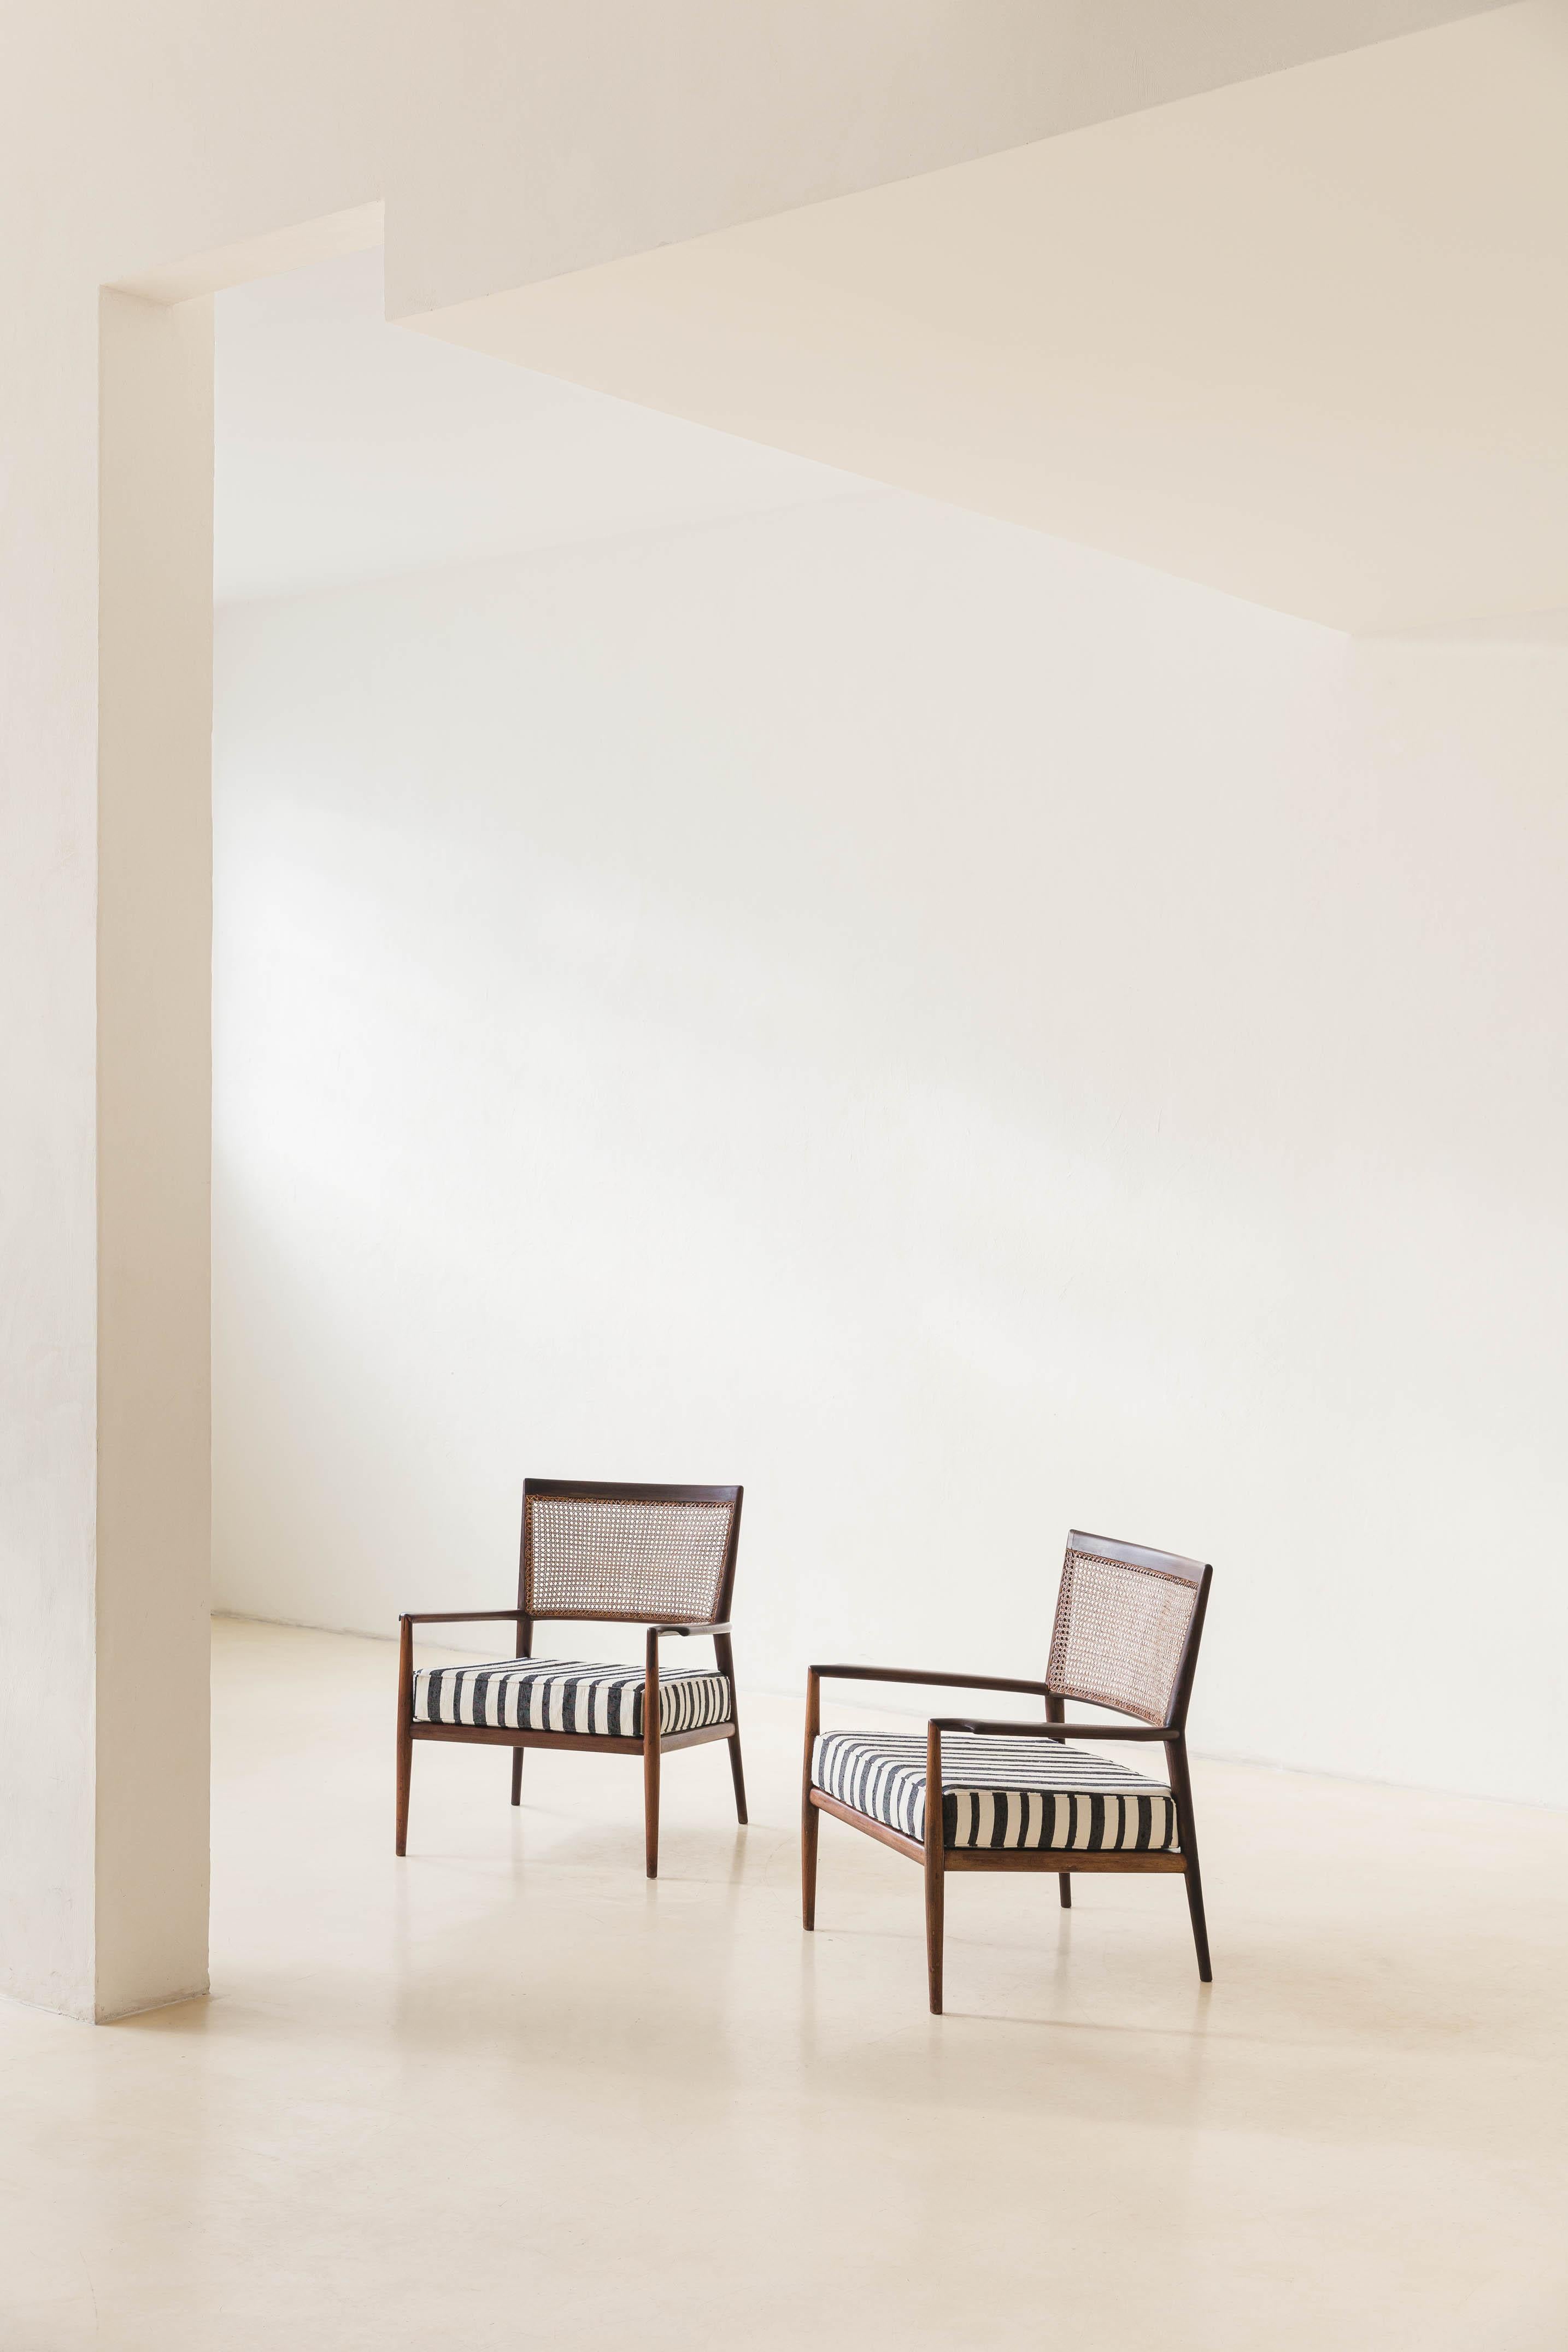 Le fauteuil MF5 a été conçu en 1953 par Carlos Milan et Miguel Forte et produit par Branco & Preto, un cabinet d'architecture et de design qui a ouvert ses portes en 1952 à São Paulo.

Branco & Preto était l'un des précurseurs de l'architecture